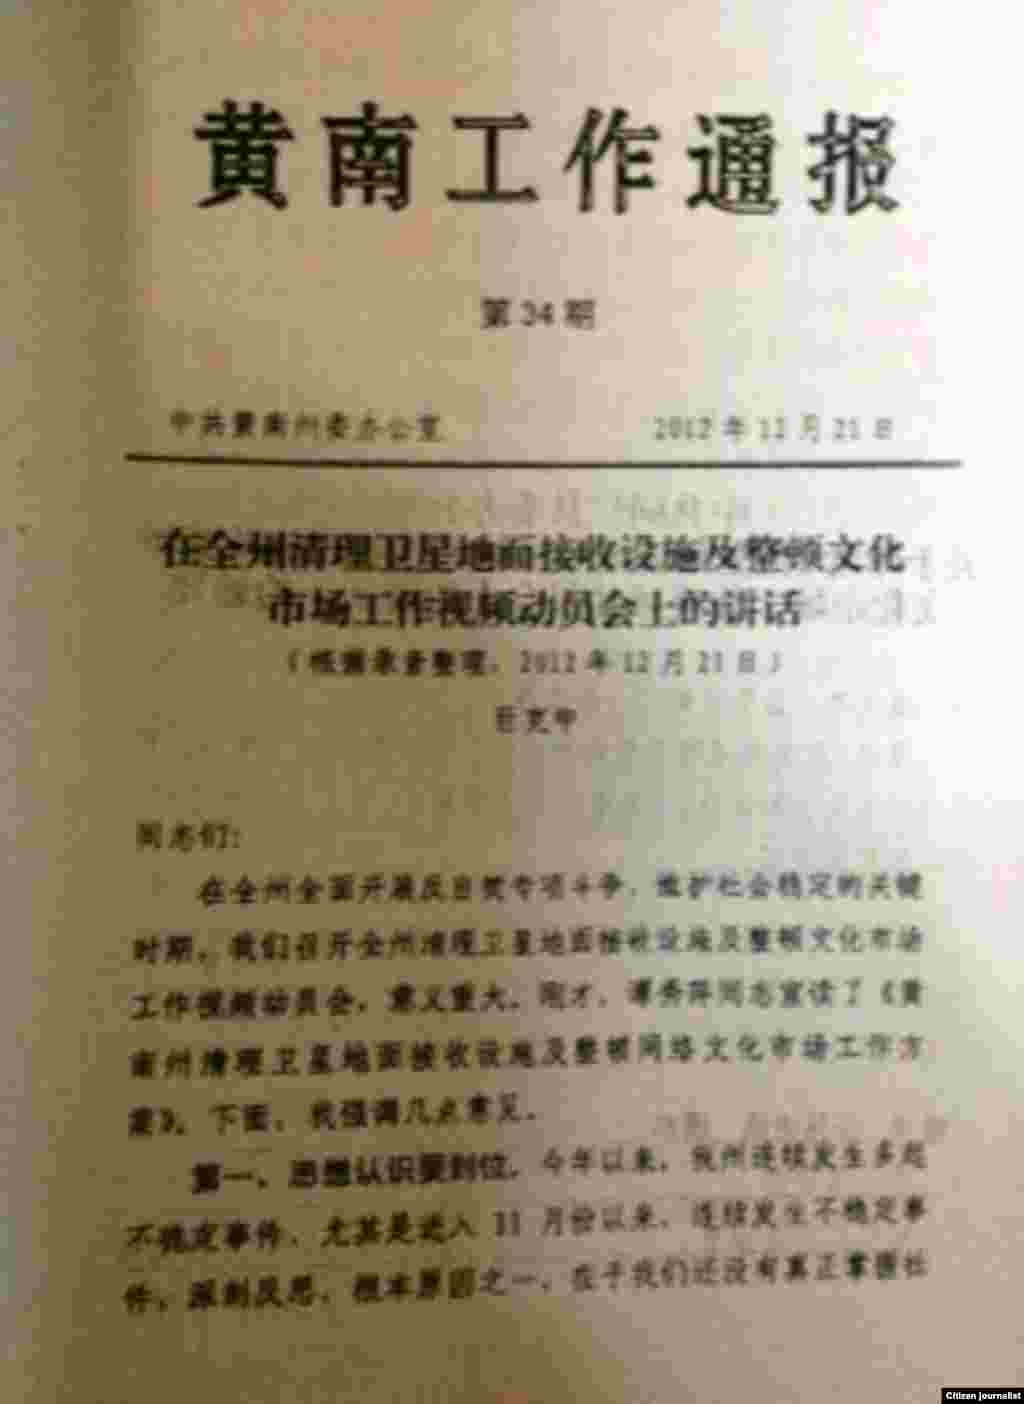 官方文件登载中共黄南州委副书记巨克中有关大规模查处卫星电视接收设施的讲话。